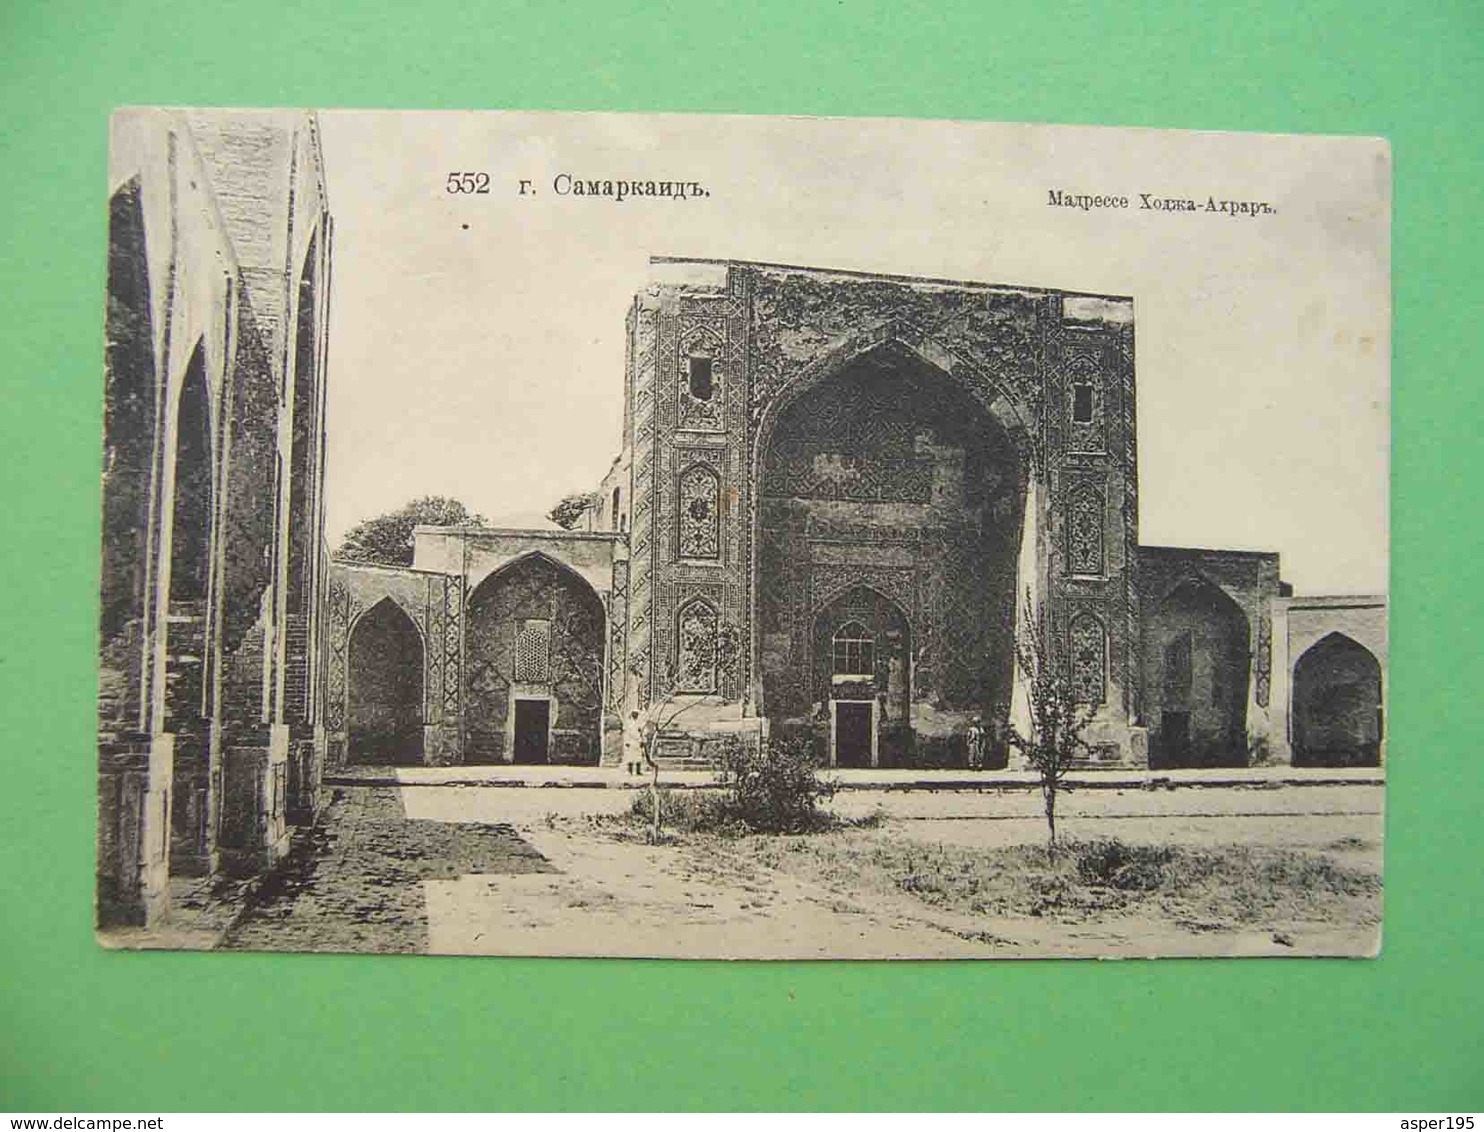 SAMARKAND 1910x Madrasah KHODZHA AHRAR. Russian Postcard. - Oezbekistan